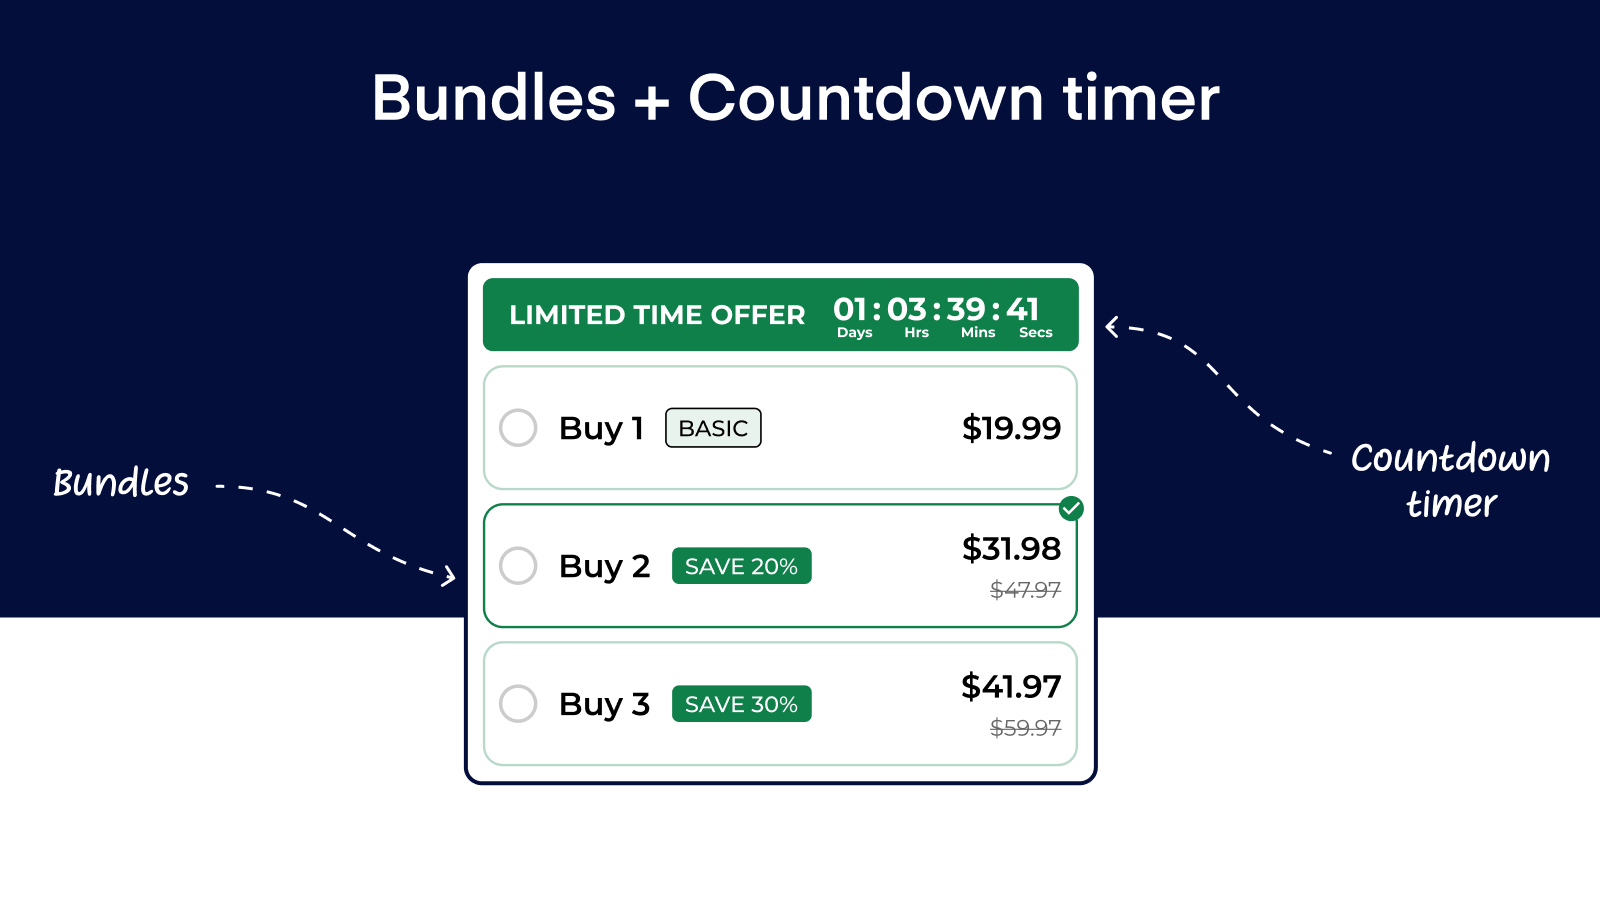 Bundles + Countdown timer